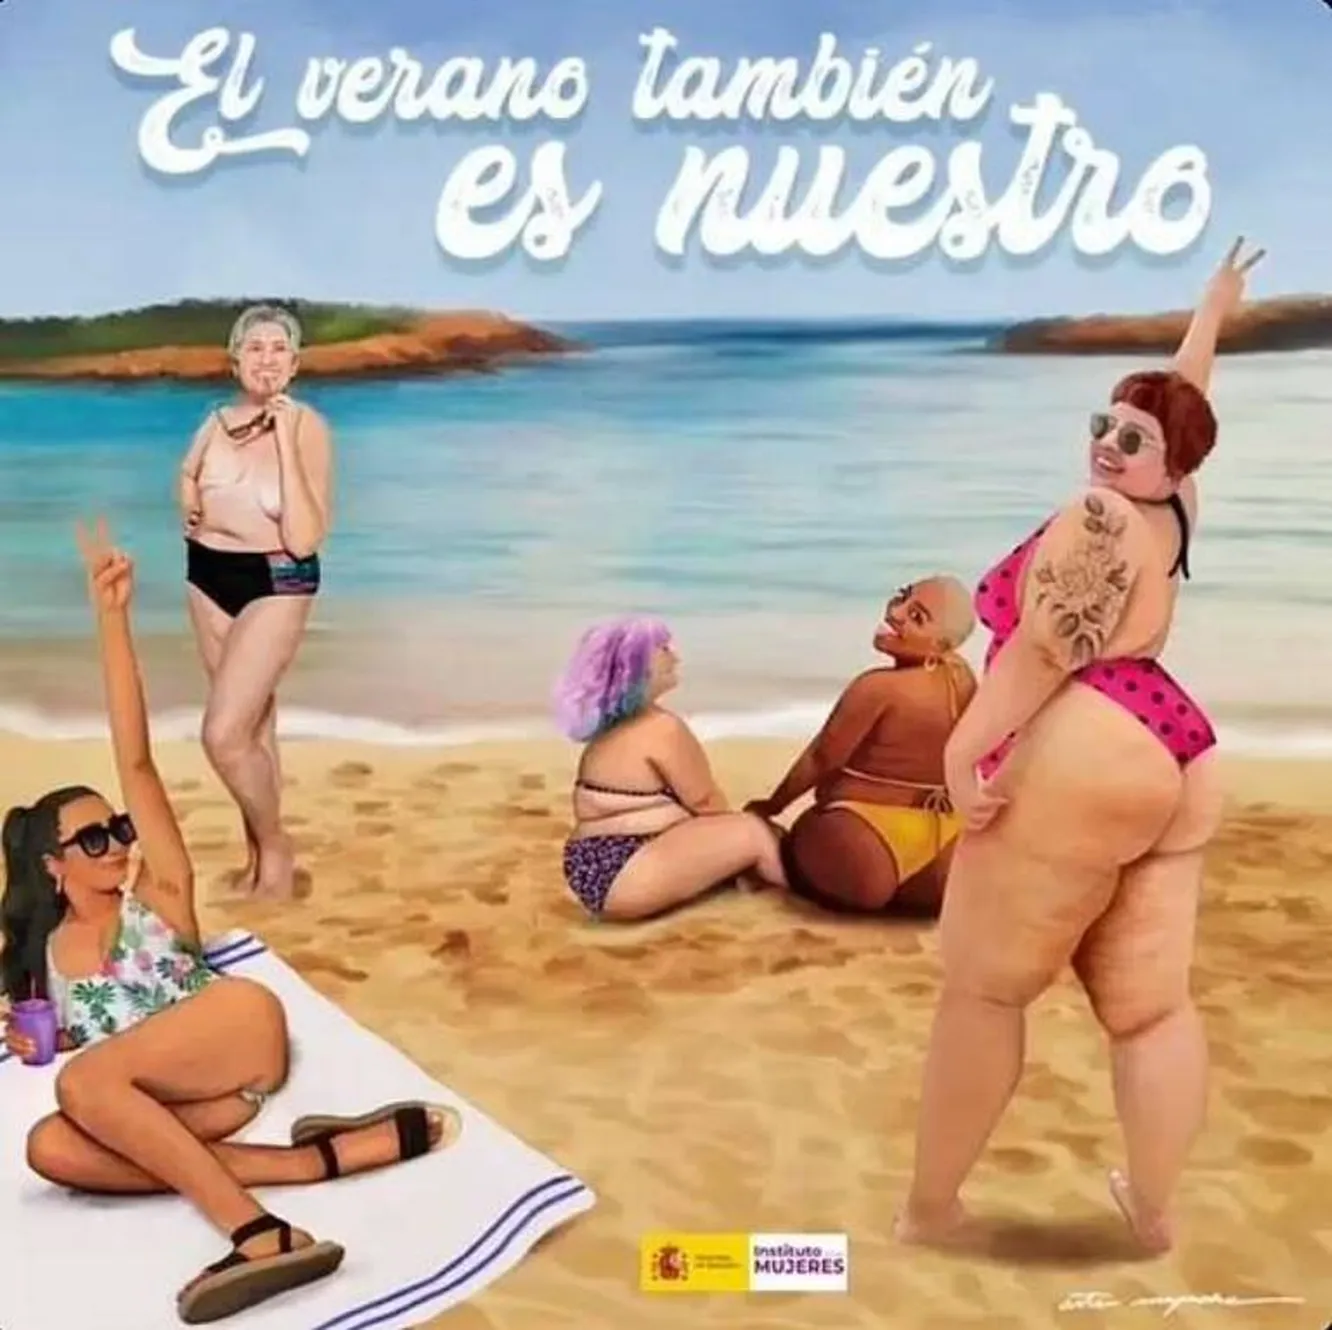 Власти Испании просят девушек плавать с обнаженной грудью у публичных местах